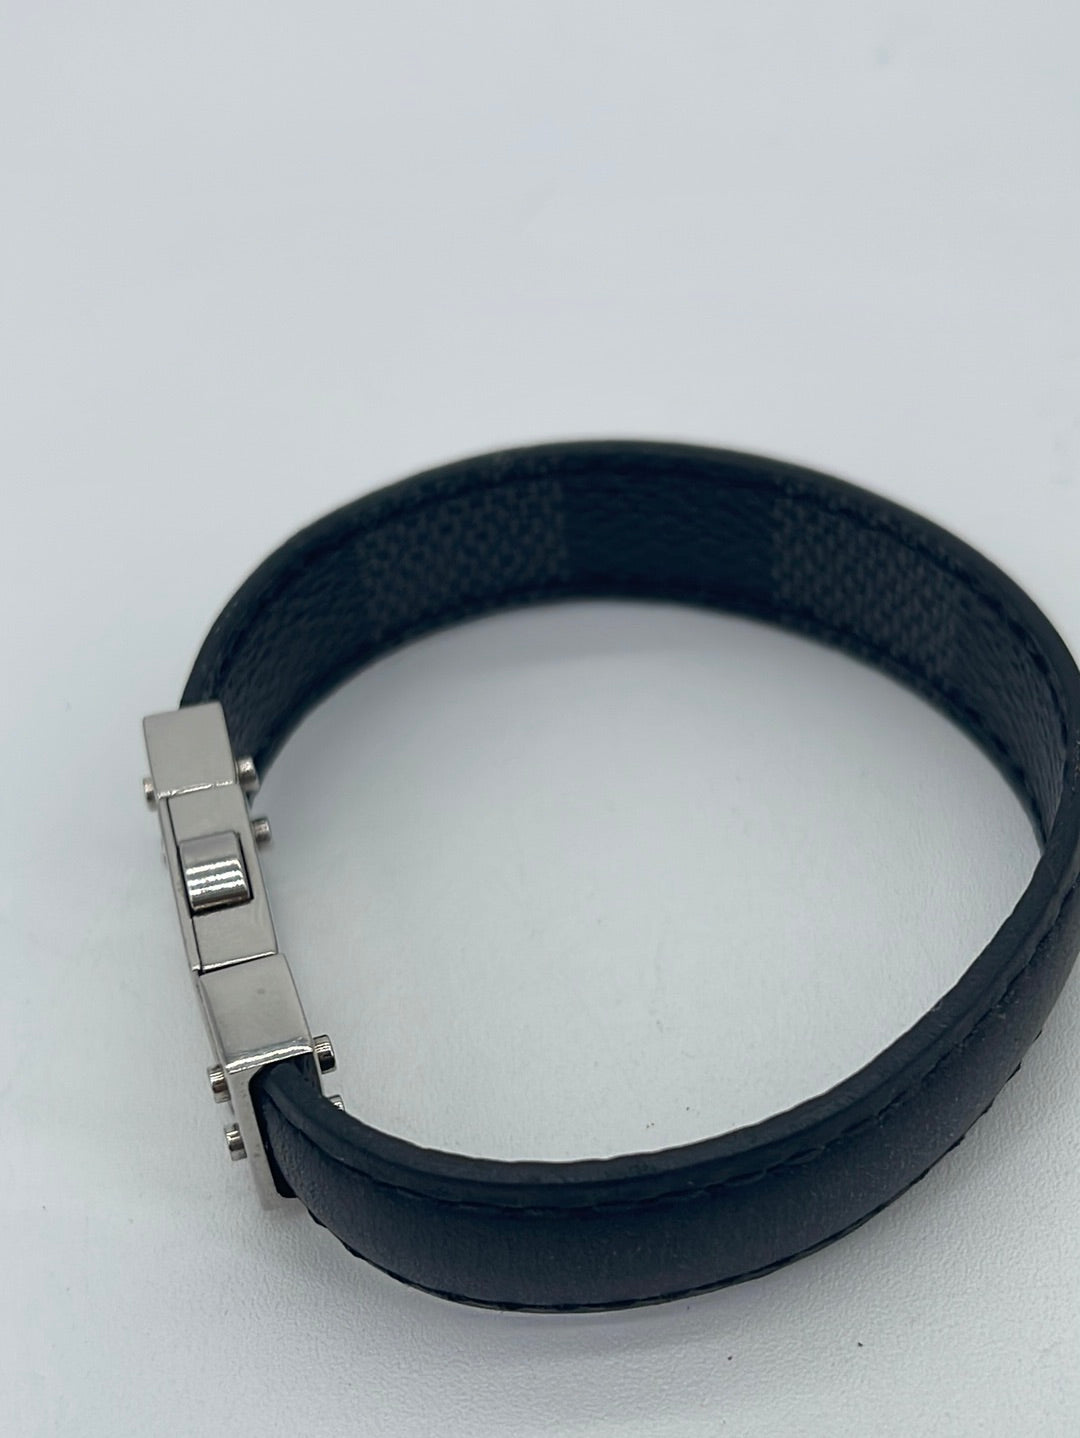 NEW Auth Louis Vuitton Dauphine Monogram Tan Bracelet Size 17 + Receipt